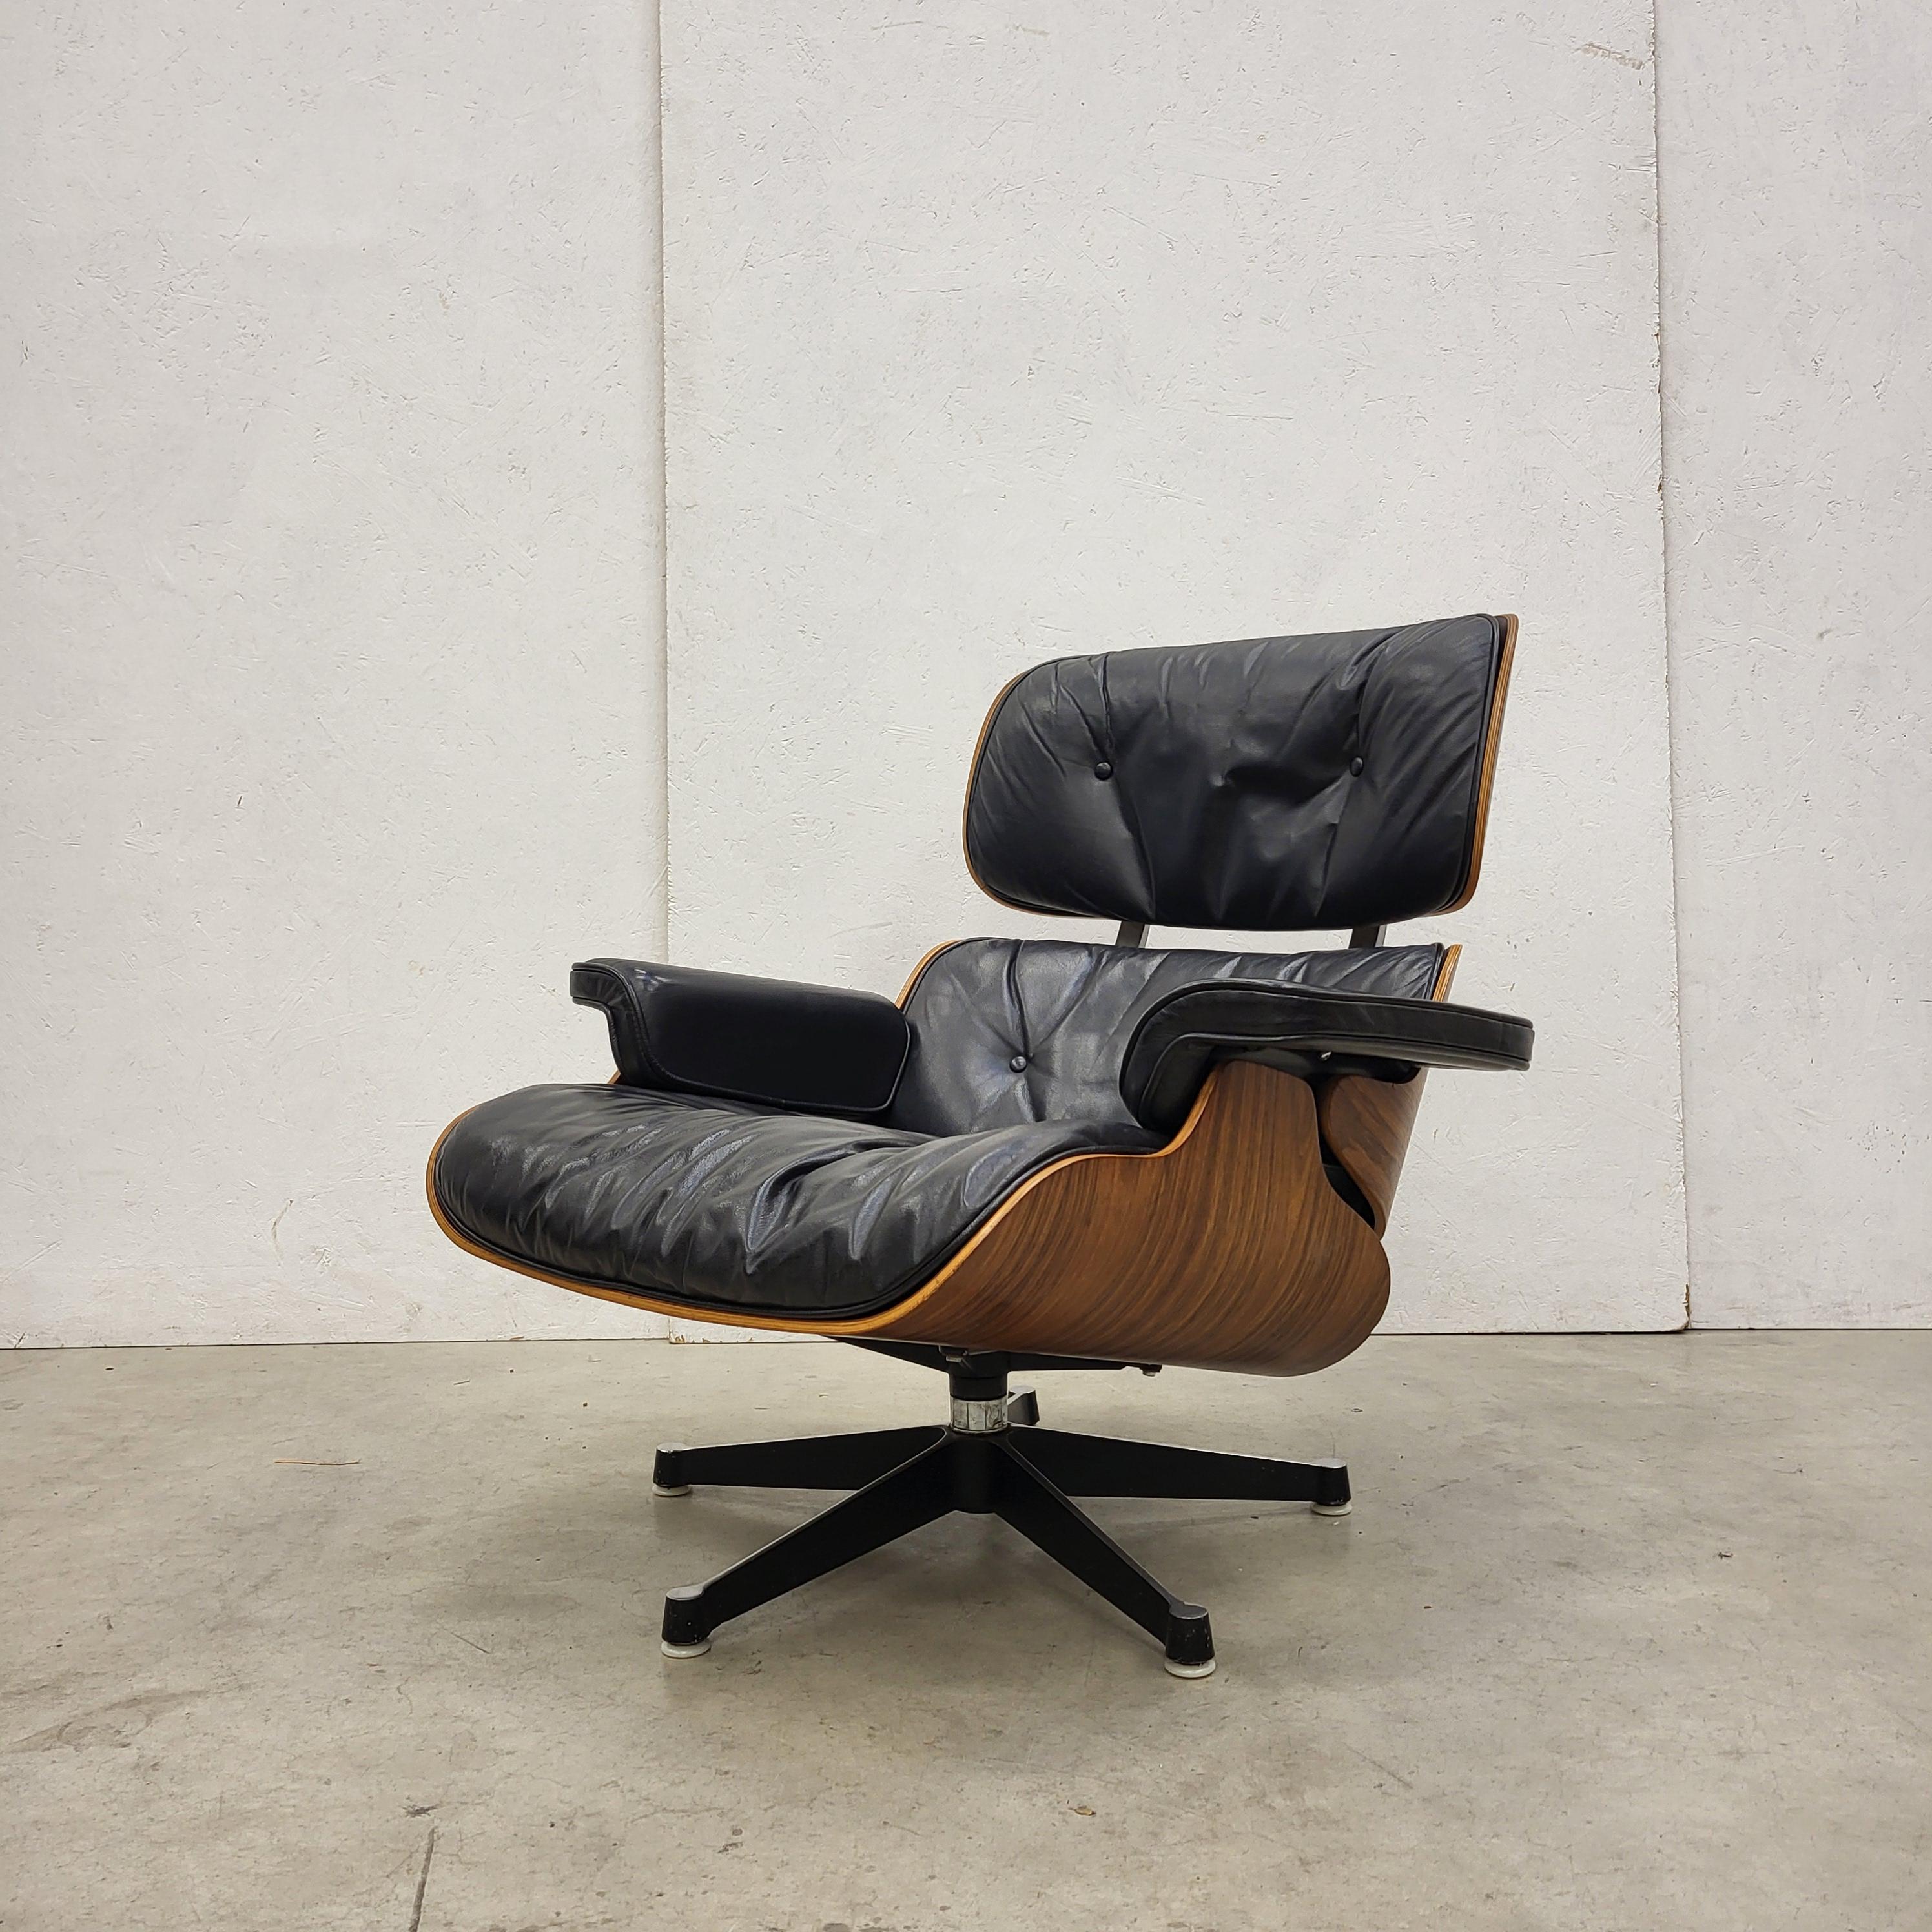 German Vintage Charles Eames Lounge Chair by Herman Miller 1964